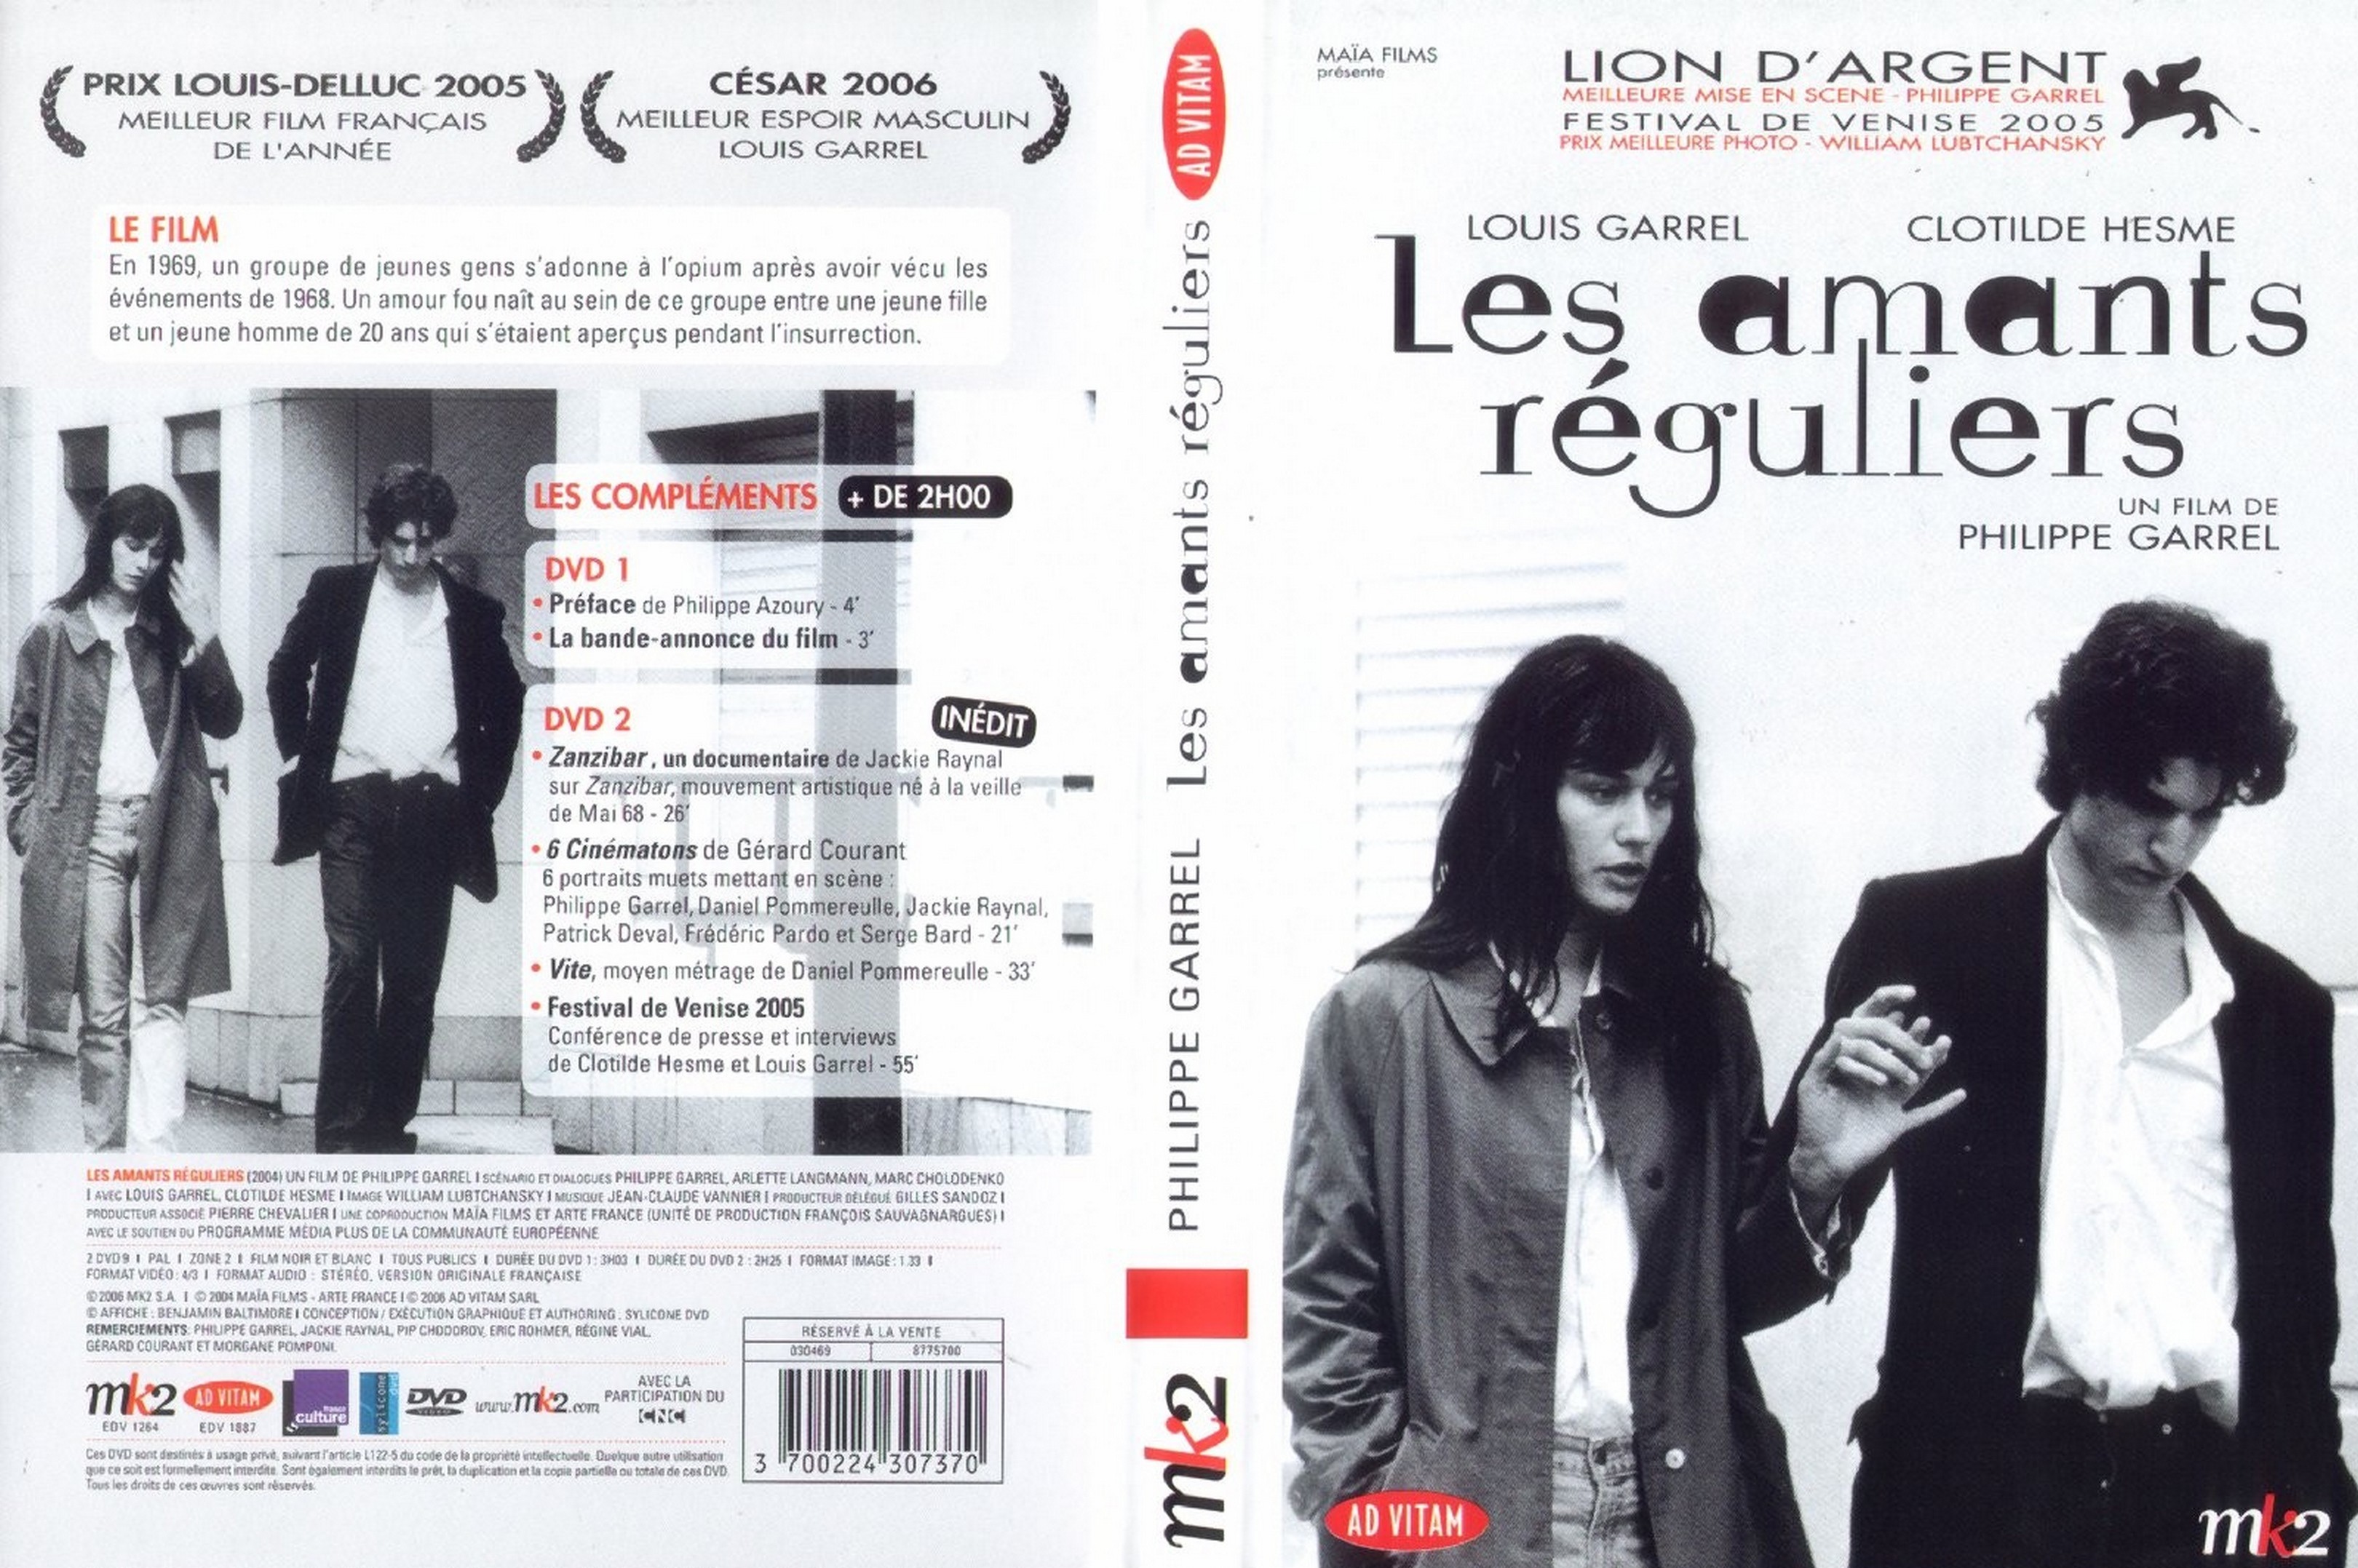 Jaquette DVD Les amants rguliers